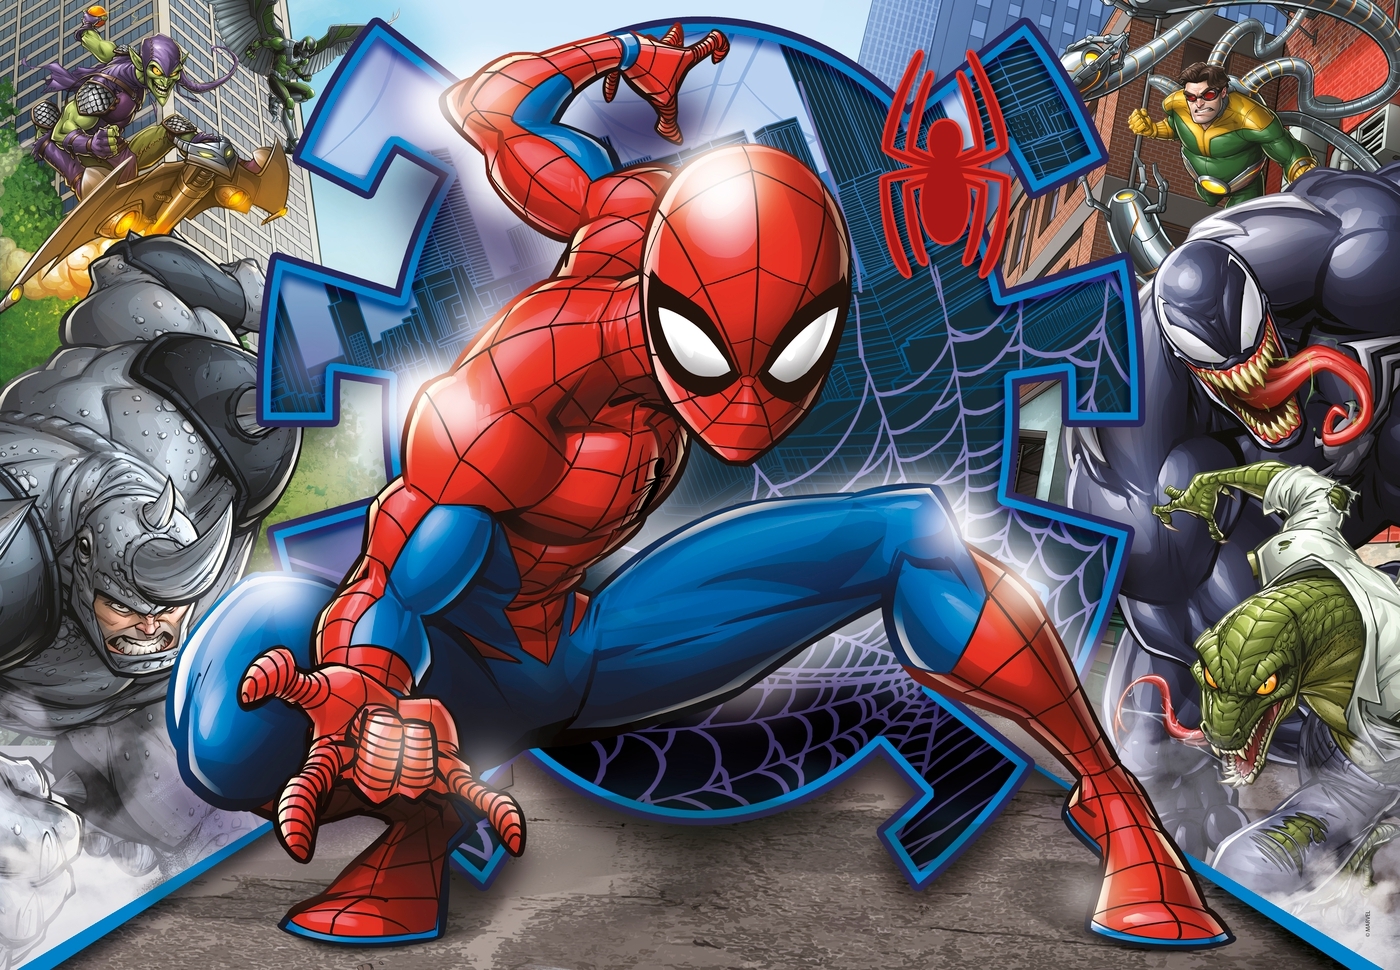 Clementoni, Puzzle SuperColor 104: Spider-Man (27116)